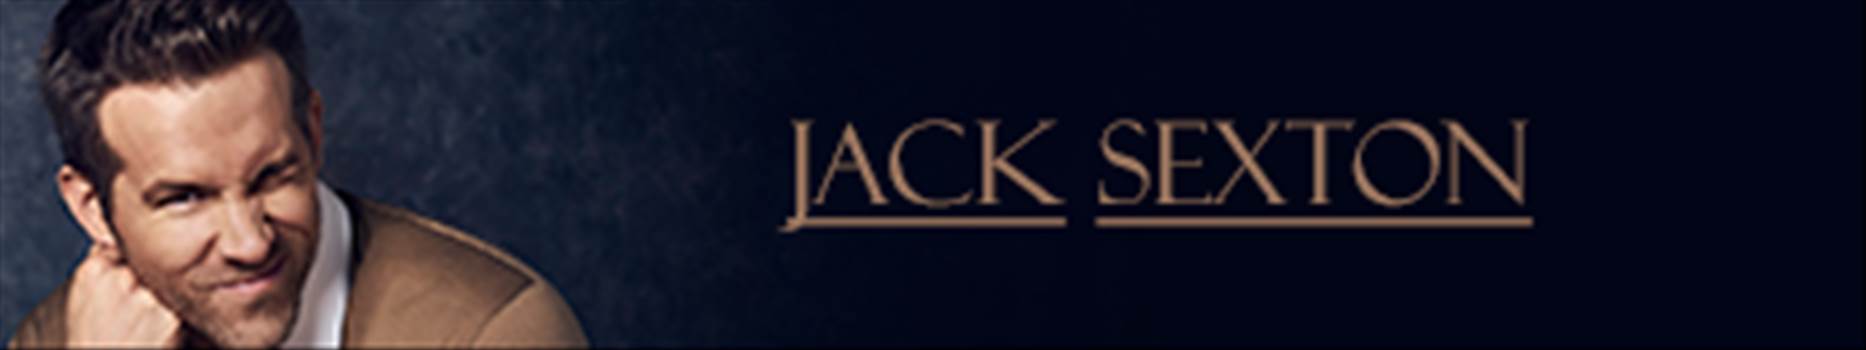 Jack.png - 